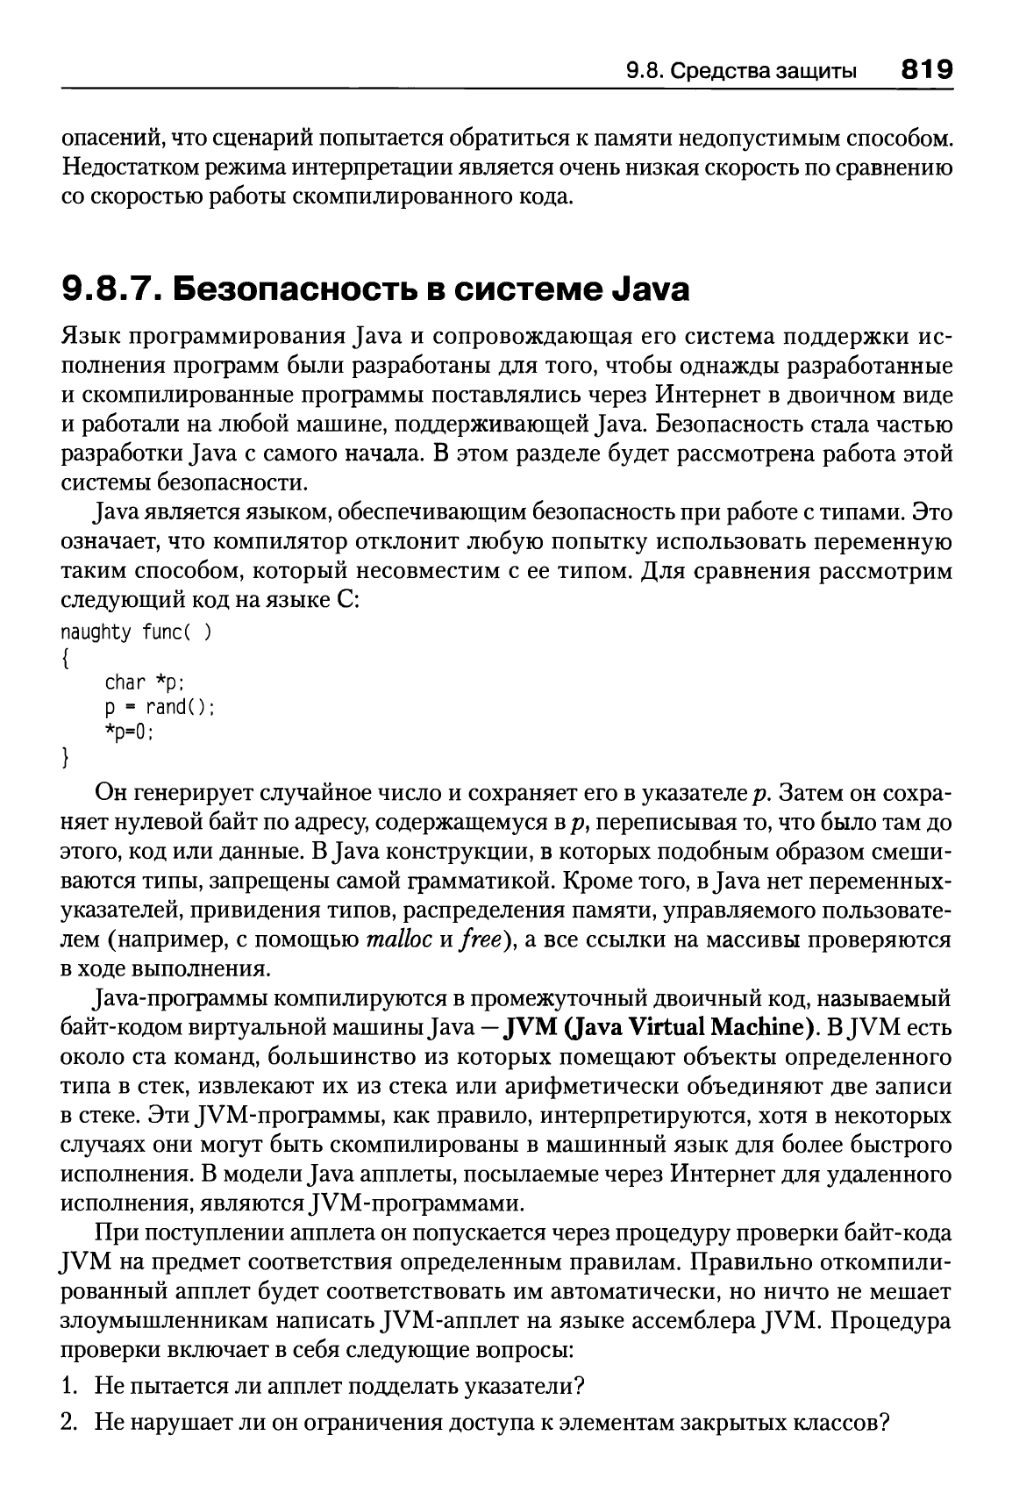 9.8.7. Безопасность в системе Java